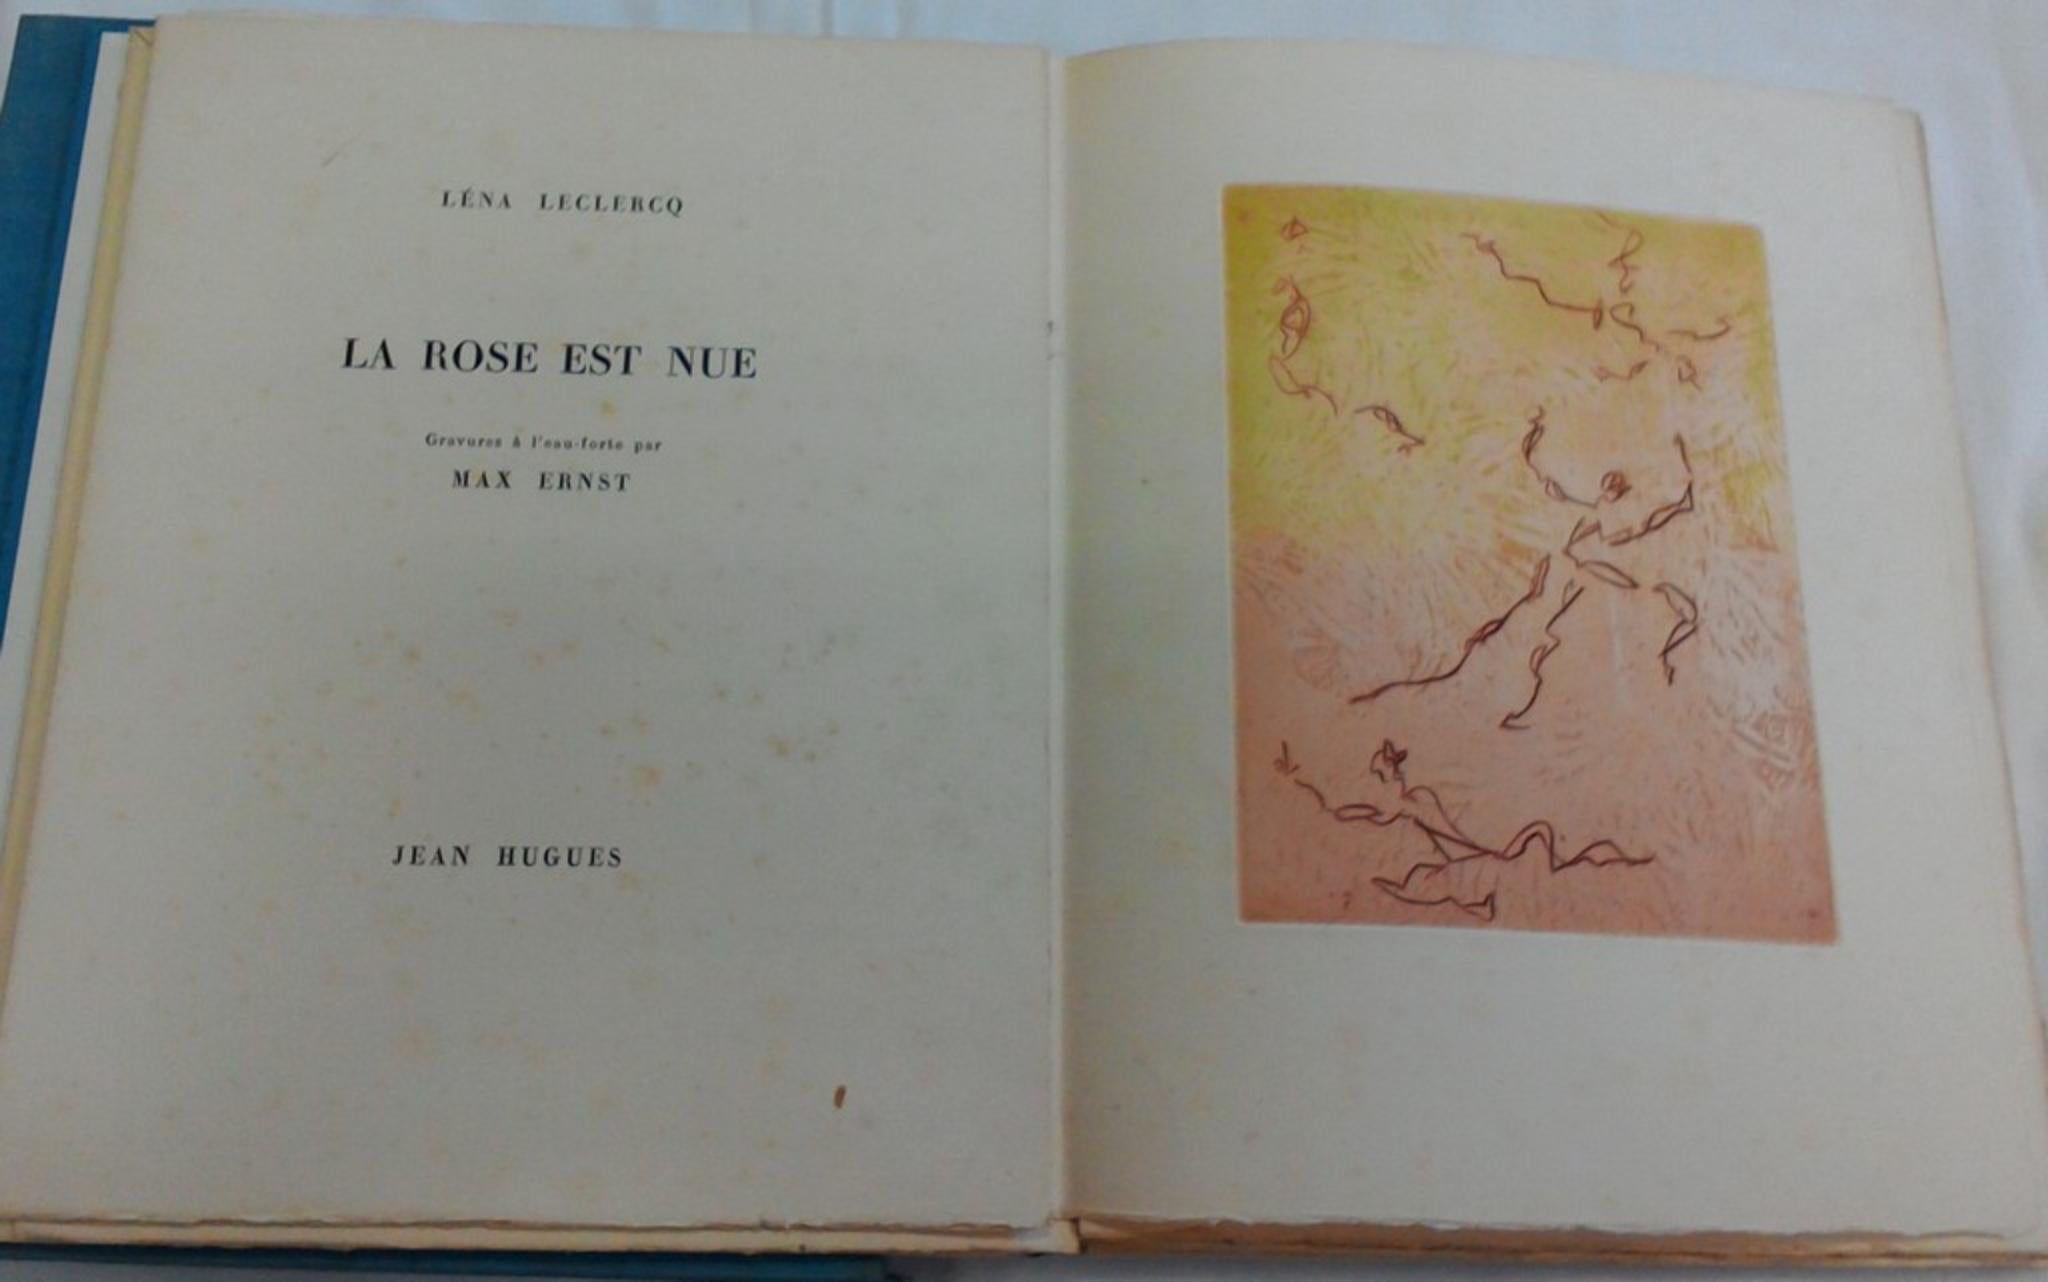 Le Rose est Nue – Seltenes Buch, illustriert von Max Ernst  - 1960 – Art von Max Ernst, Lena Leclercq, Jean Hugues